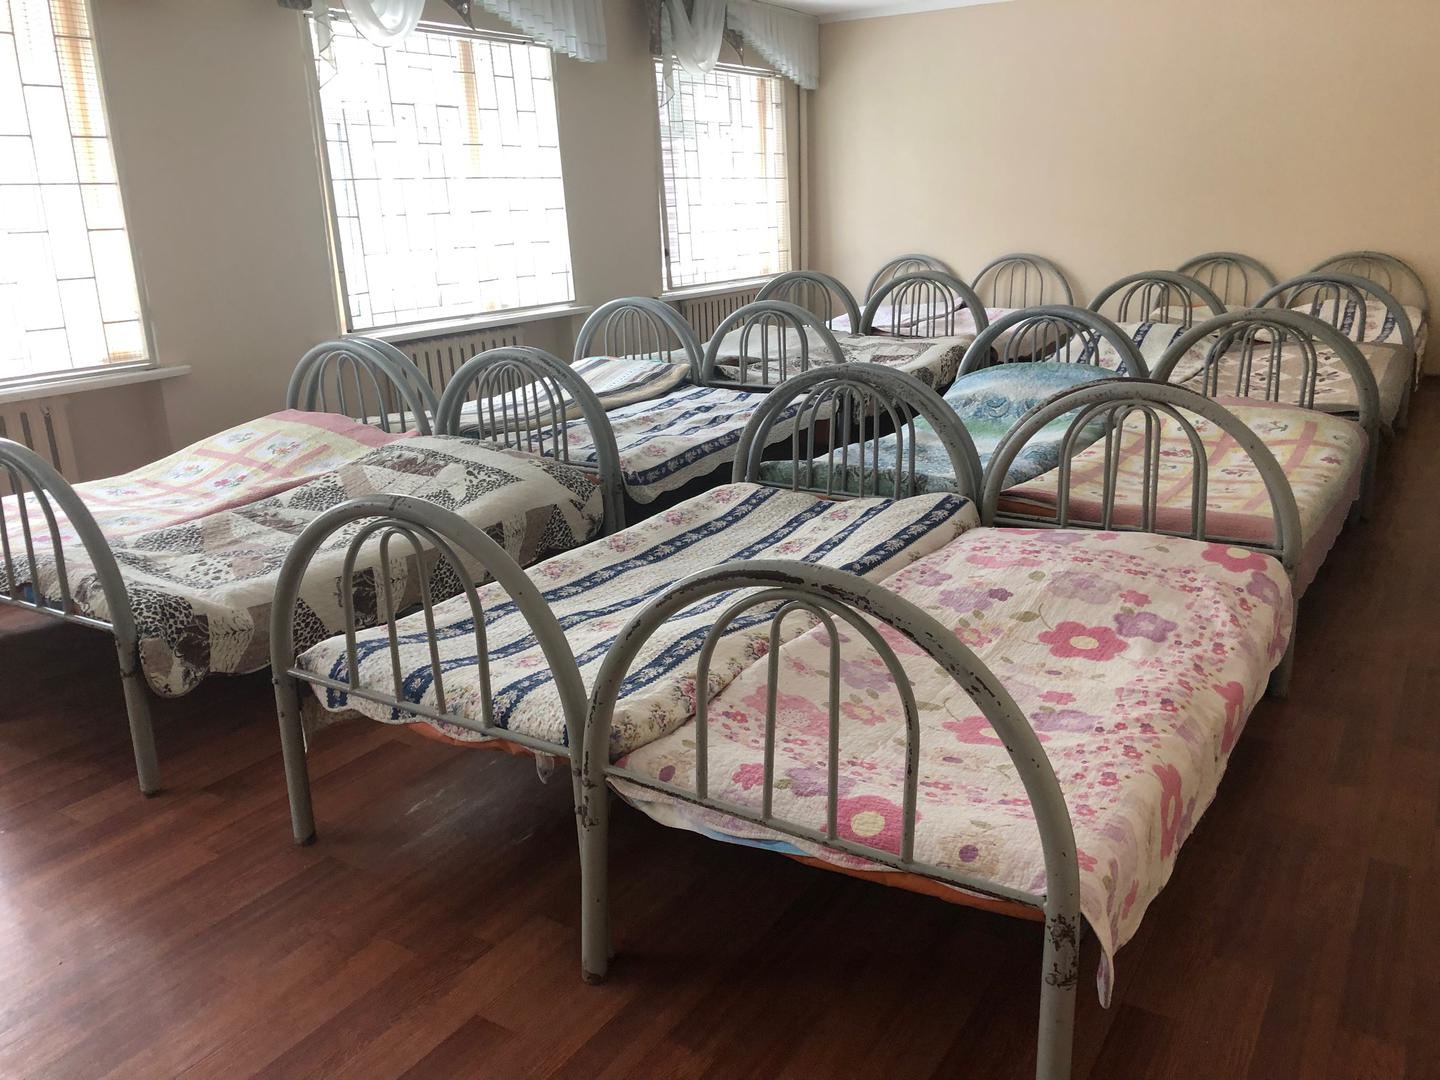 Шестнадцать кроватей, заполняющих комнату с зарешеченными окнами, в интернате для детей с инвалидностью. 